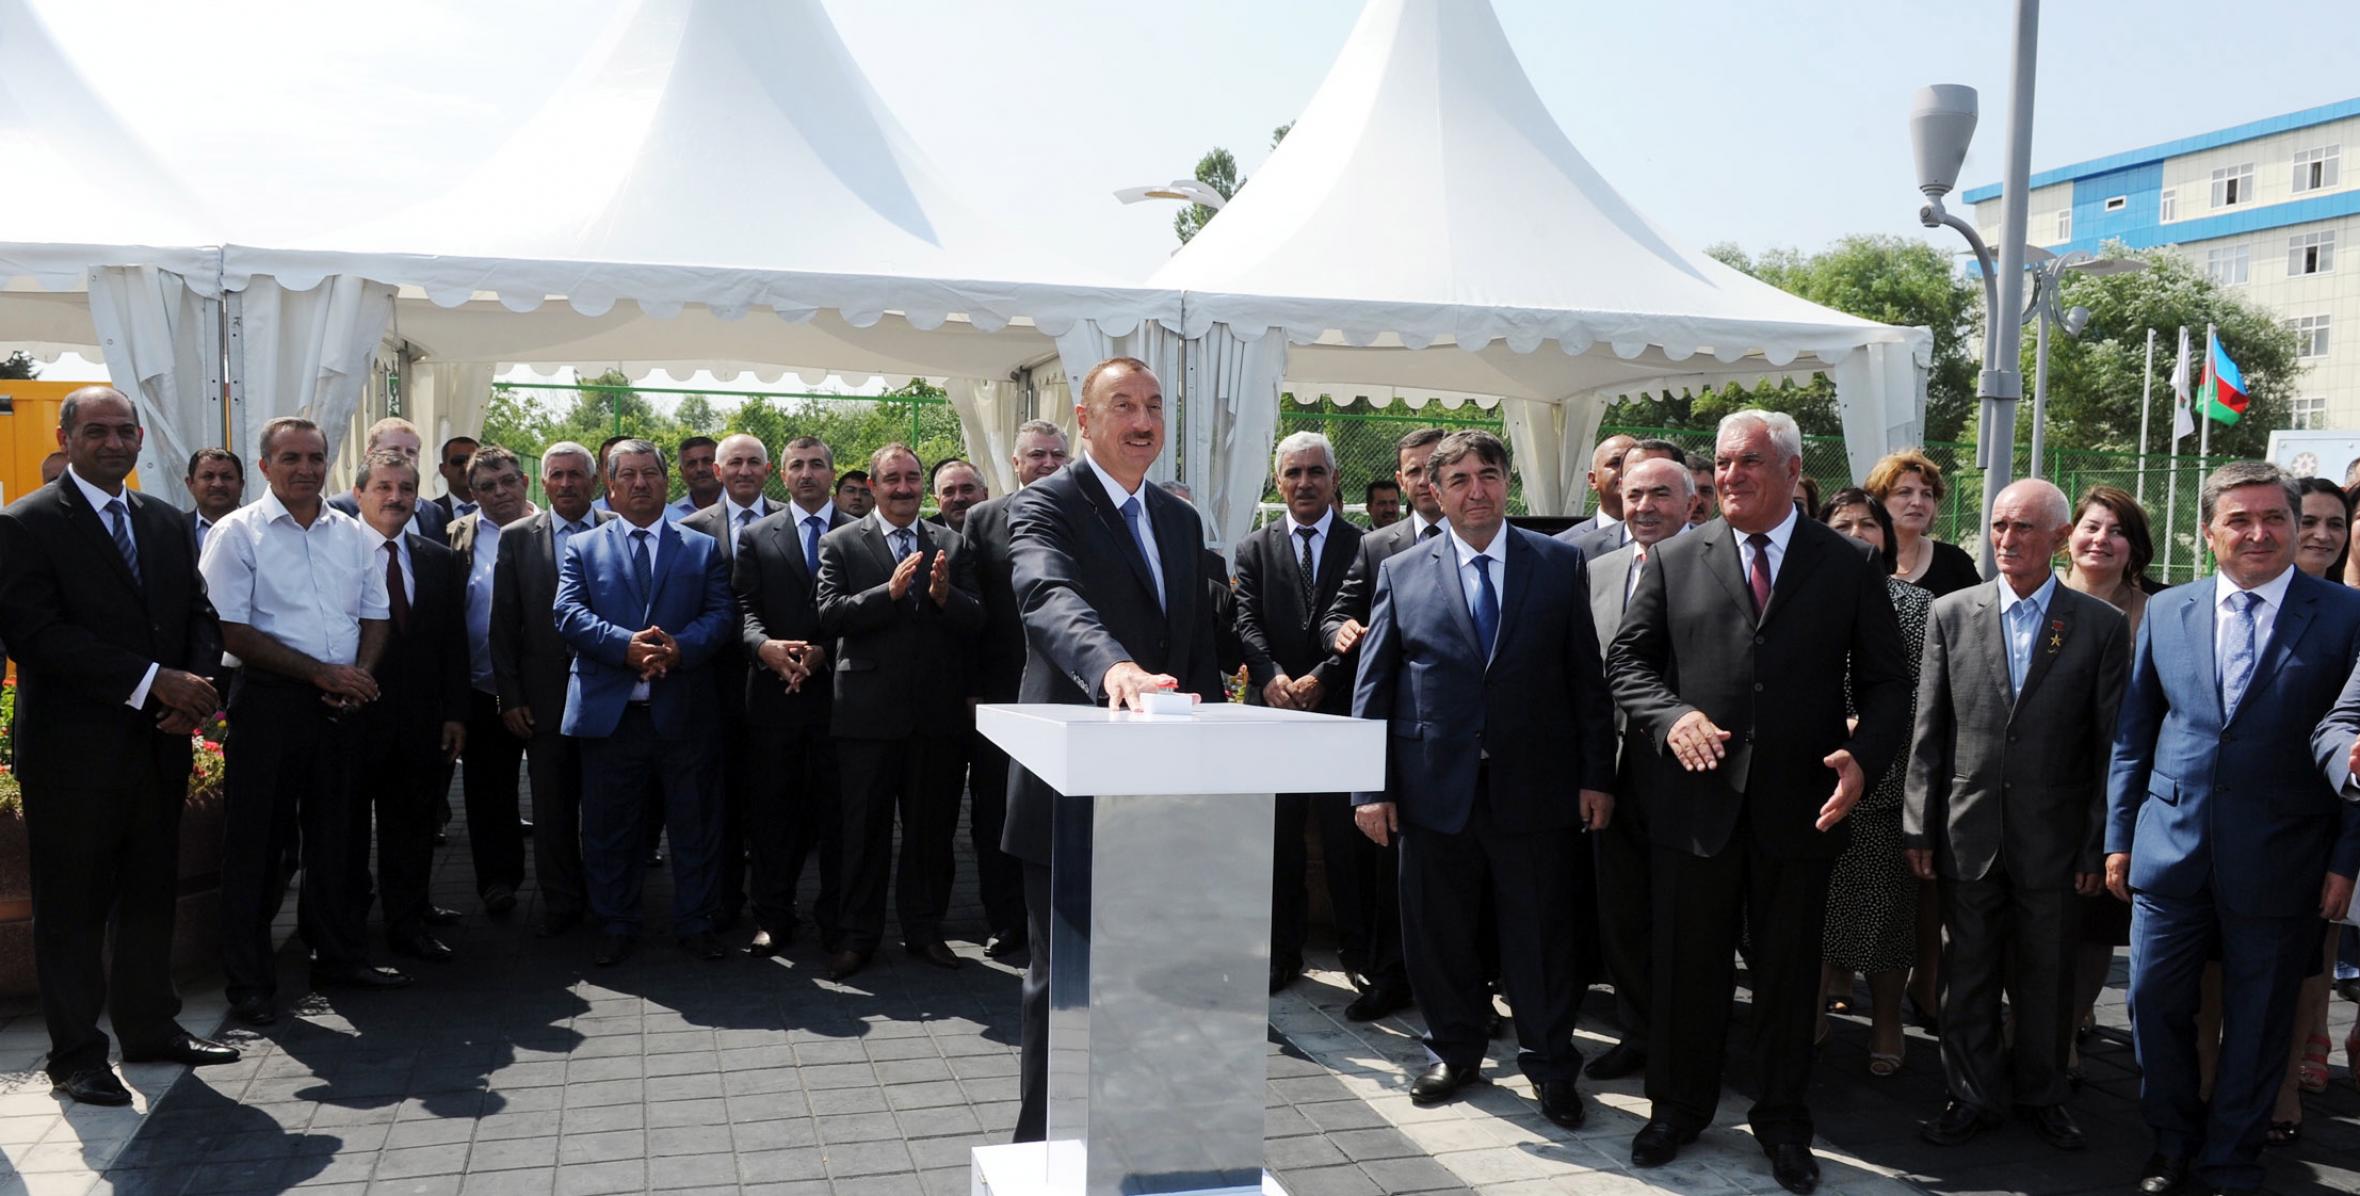 Ильхам Алиев принял участие в церемонии открытия канализационной сети и водопровода, который будет обеспечивать питьевой водой город Шабран